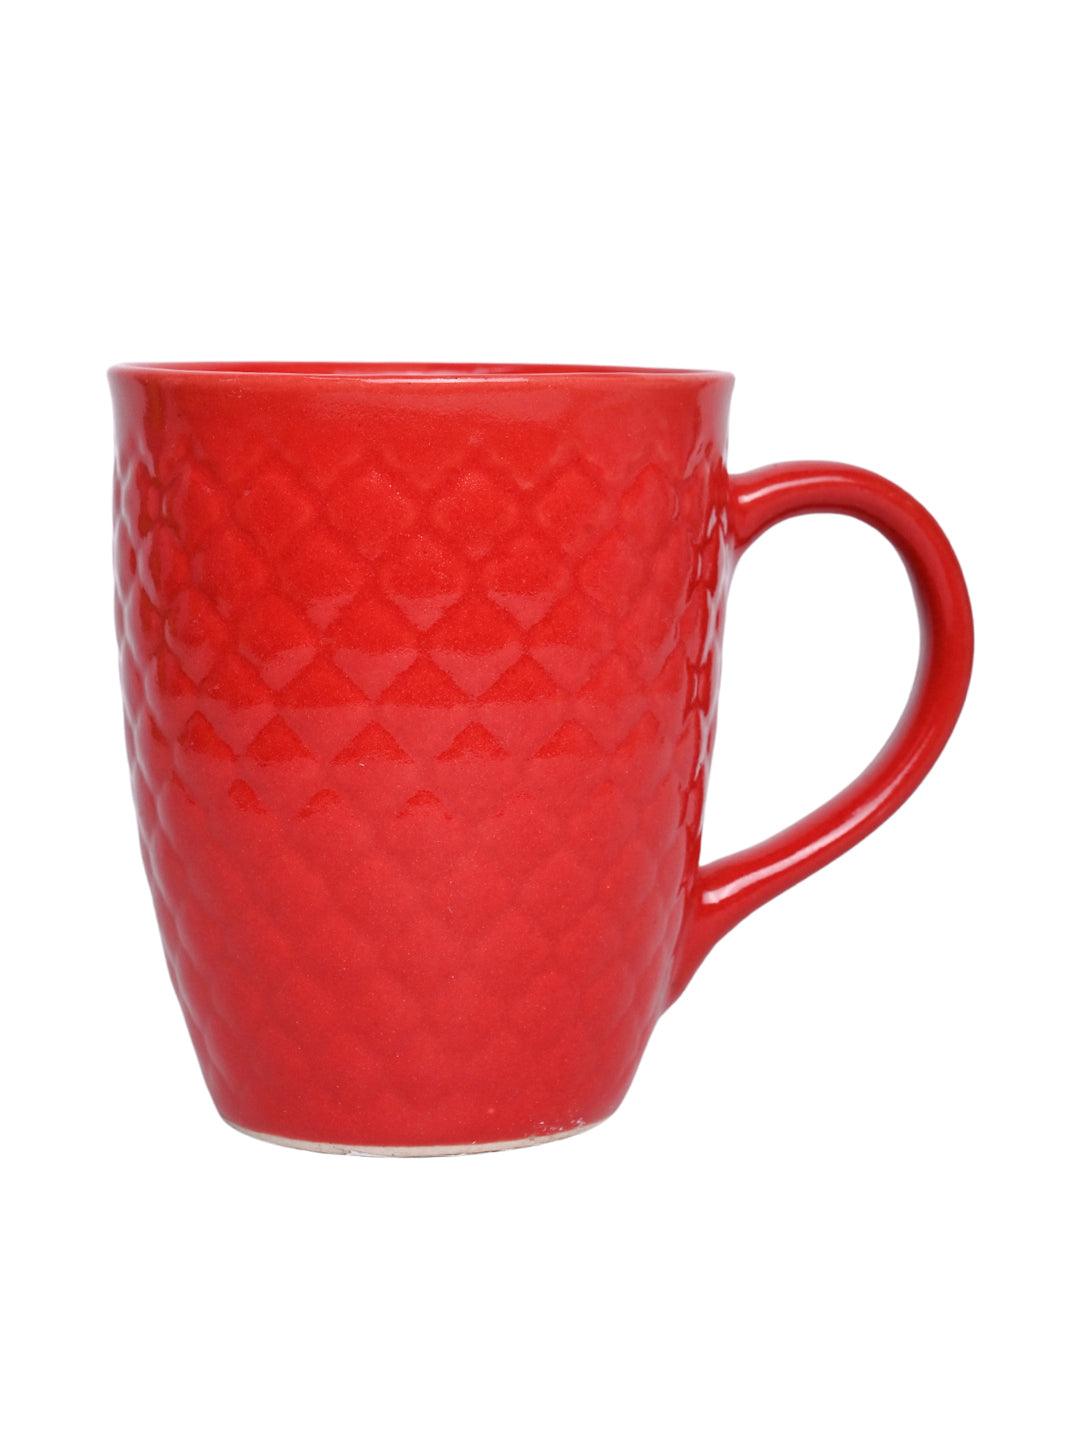 VON CASA Ceramic Coffee Mug - 320 Ml, Red - MARKET 99